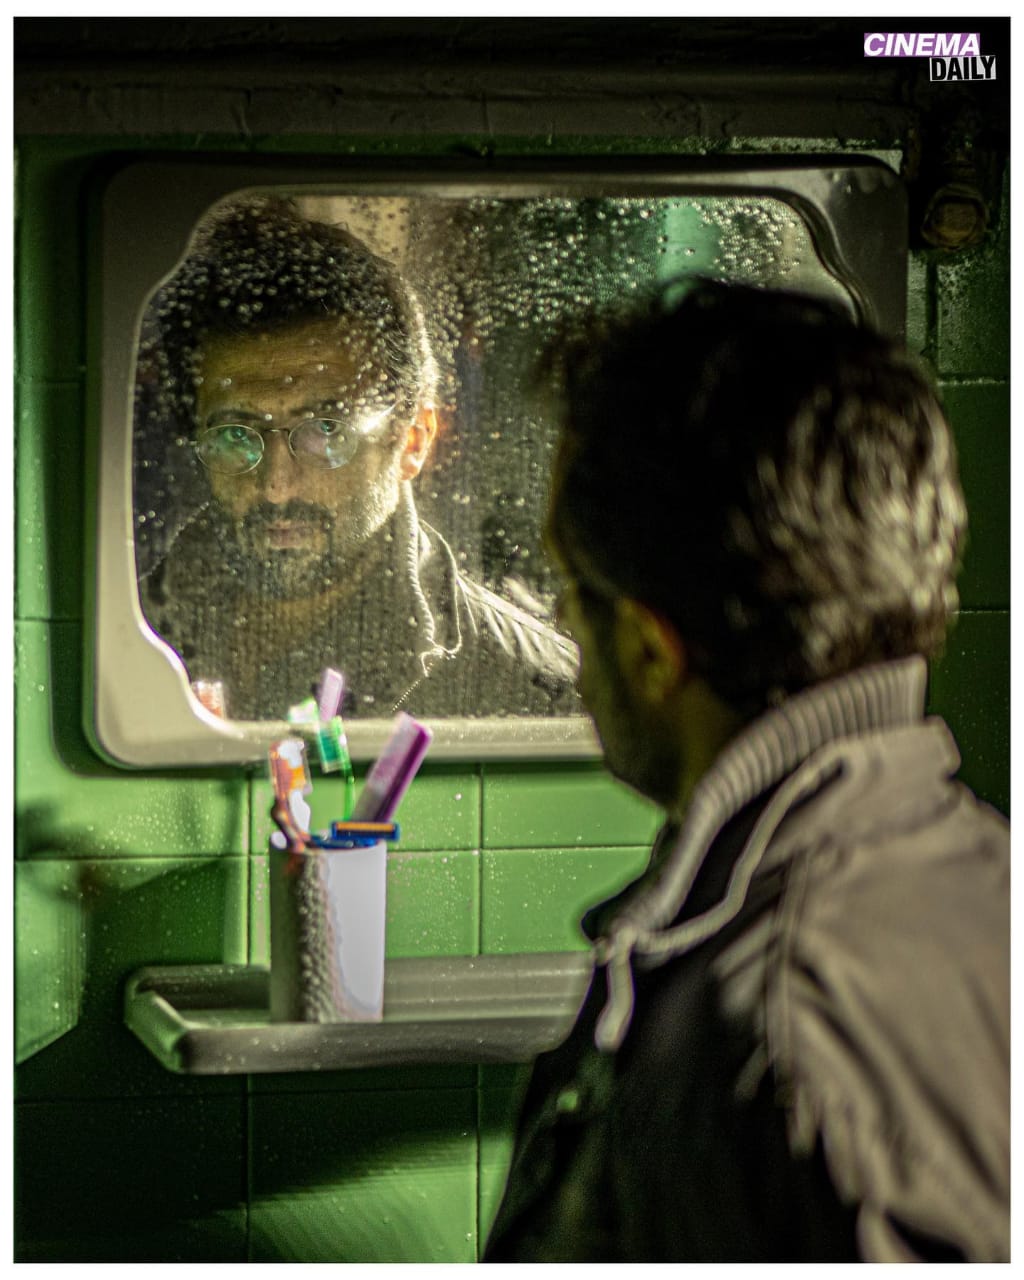 فیلم سینمایی صورت فلکی، به کارگردانی حسین دارابی